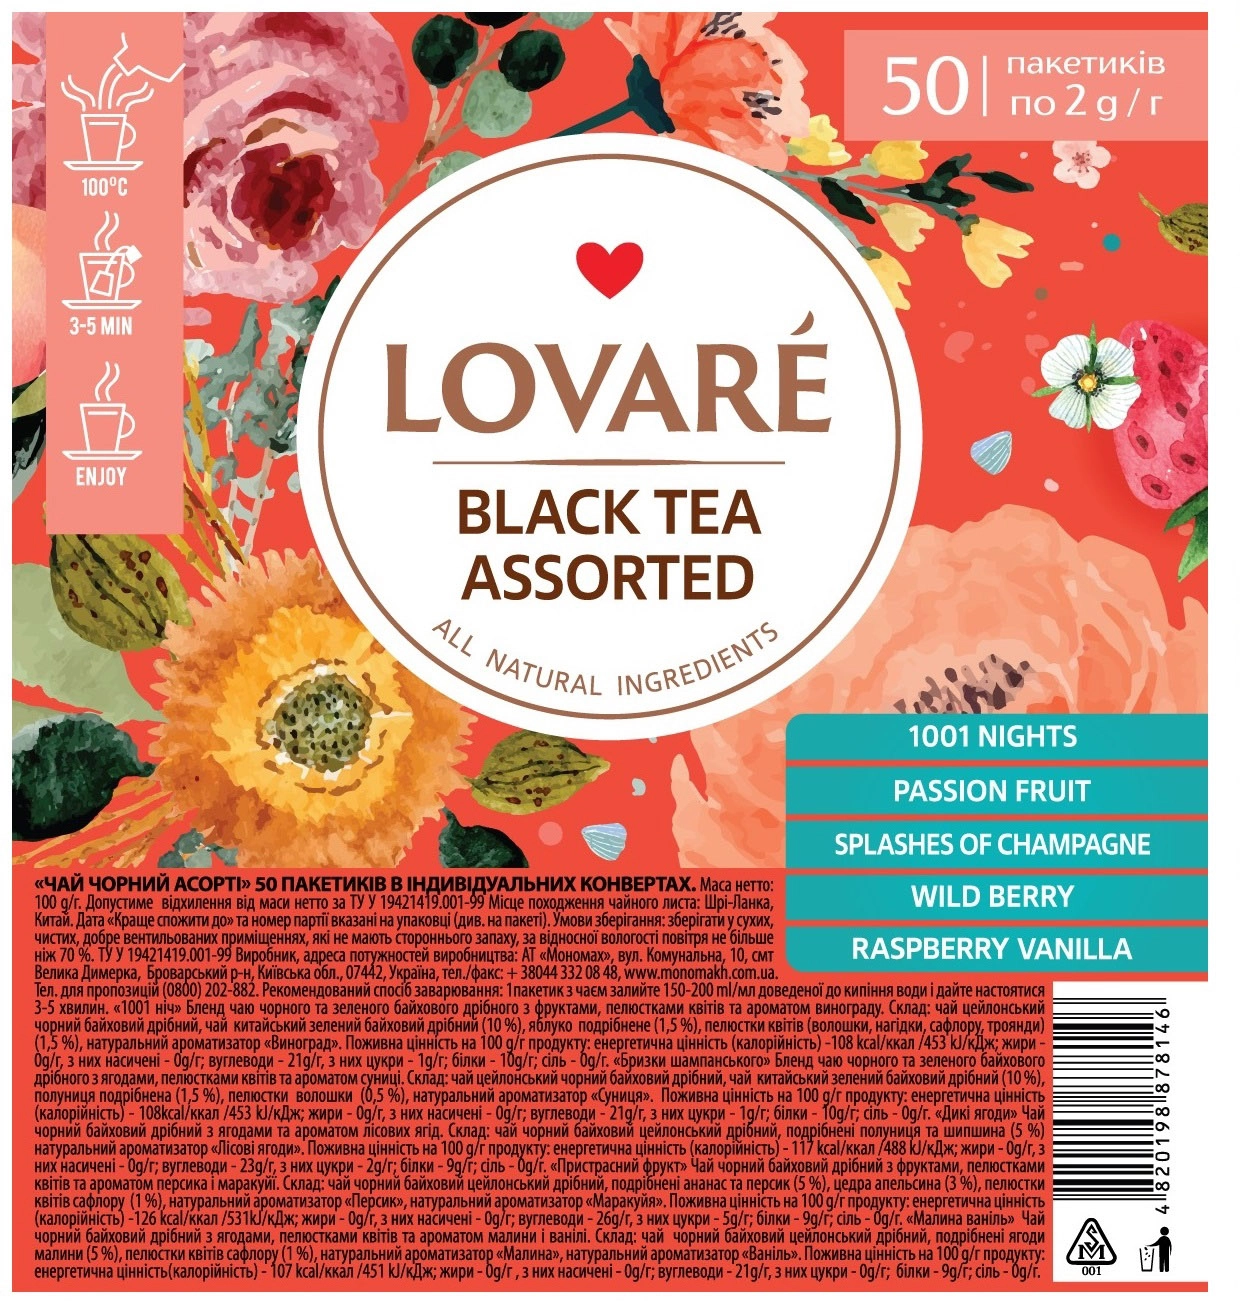 Чай чорний асорті Lovare Assorted Black Tea 5 видів по 10 пакетиків